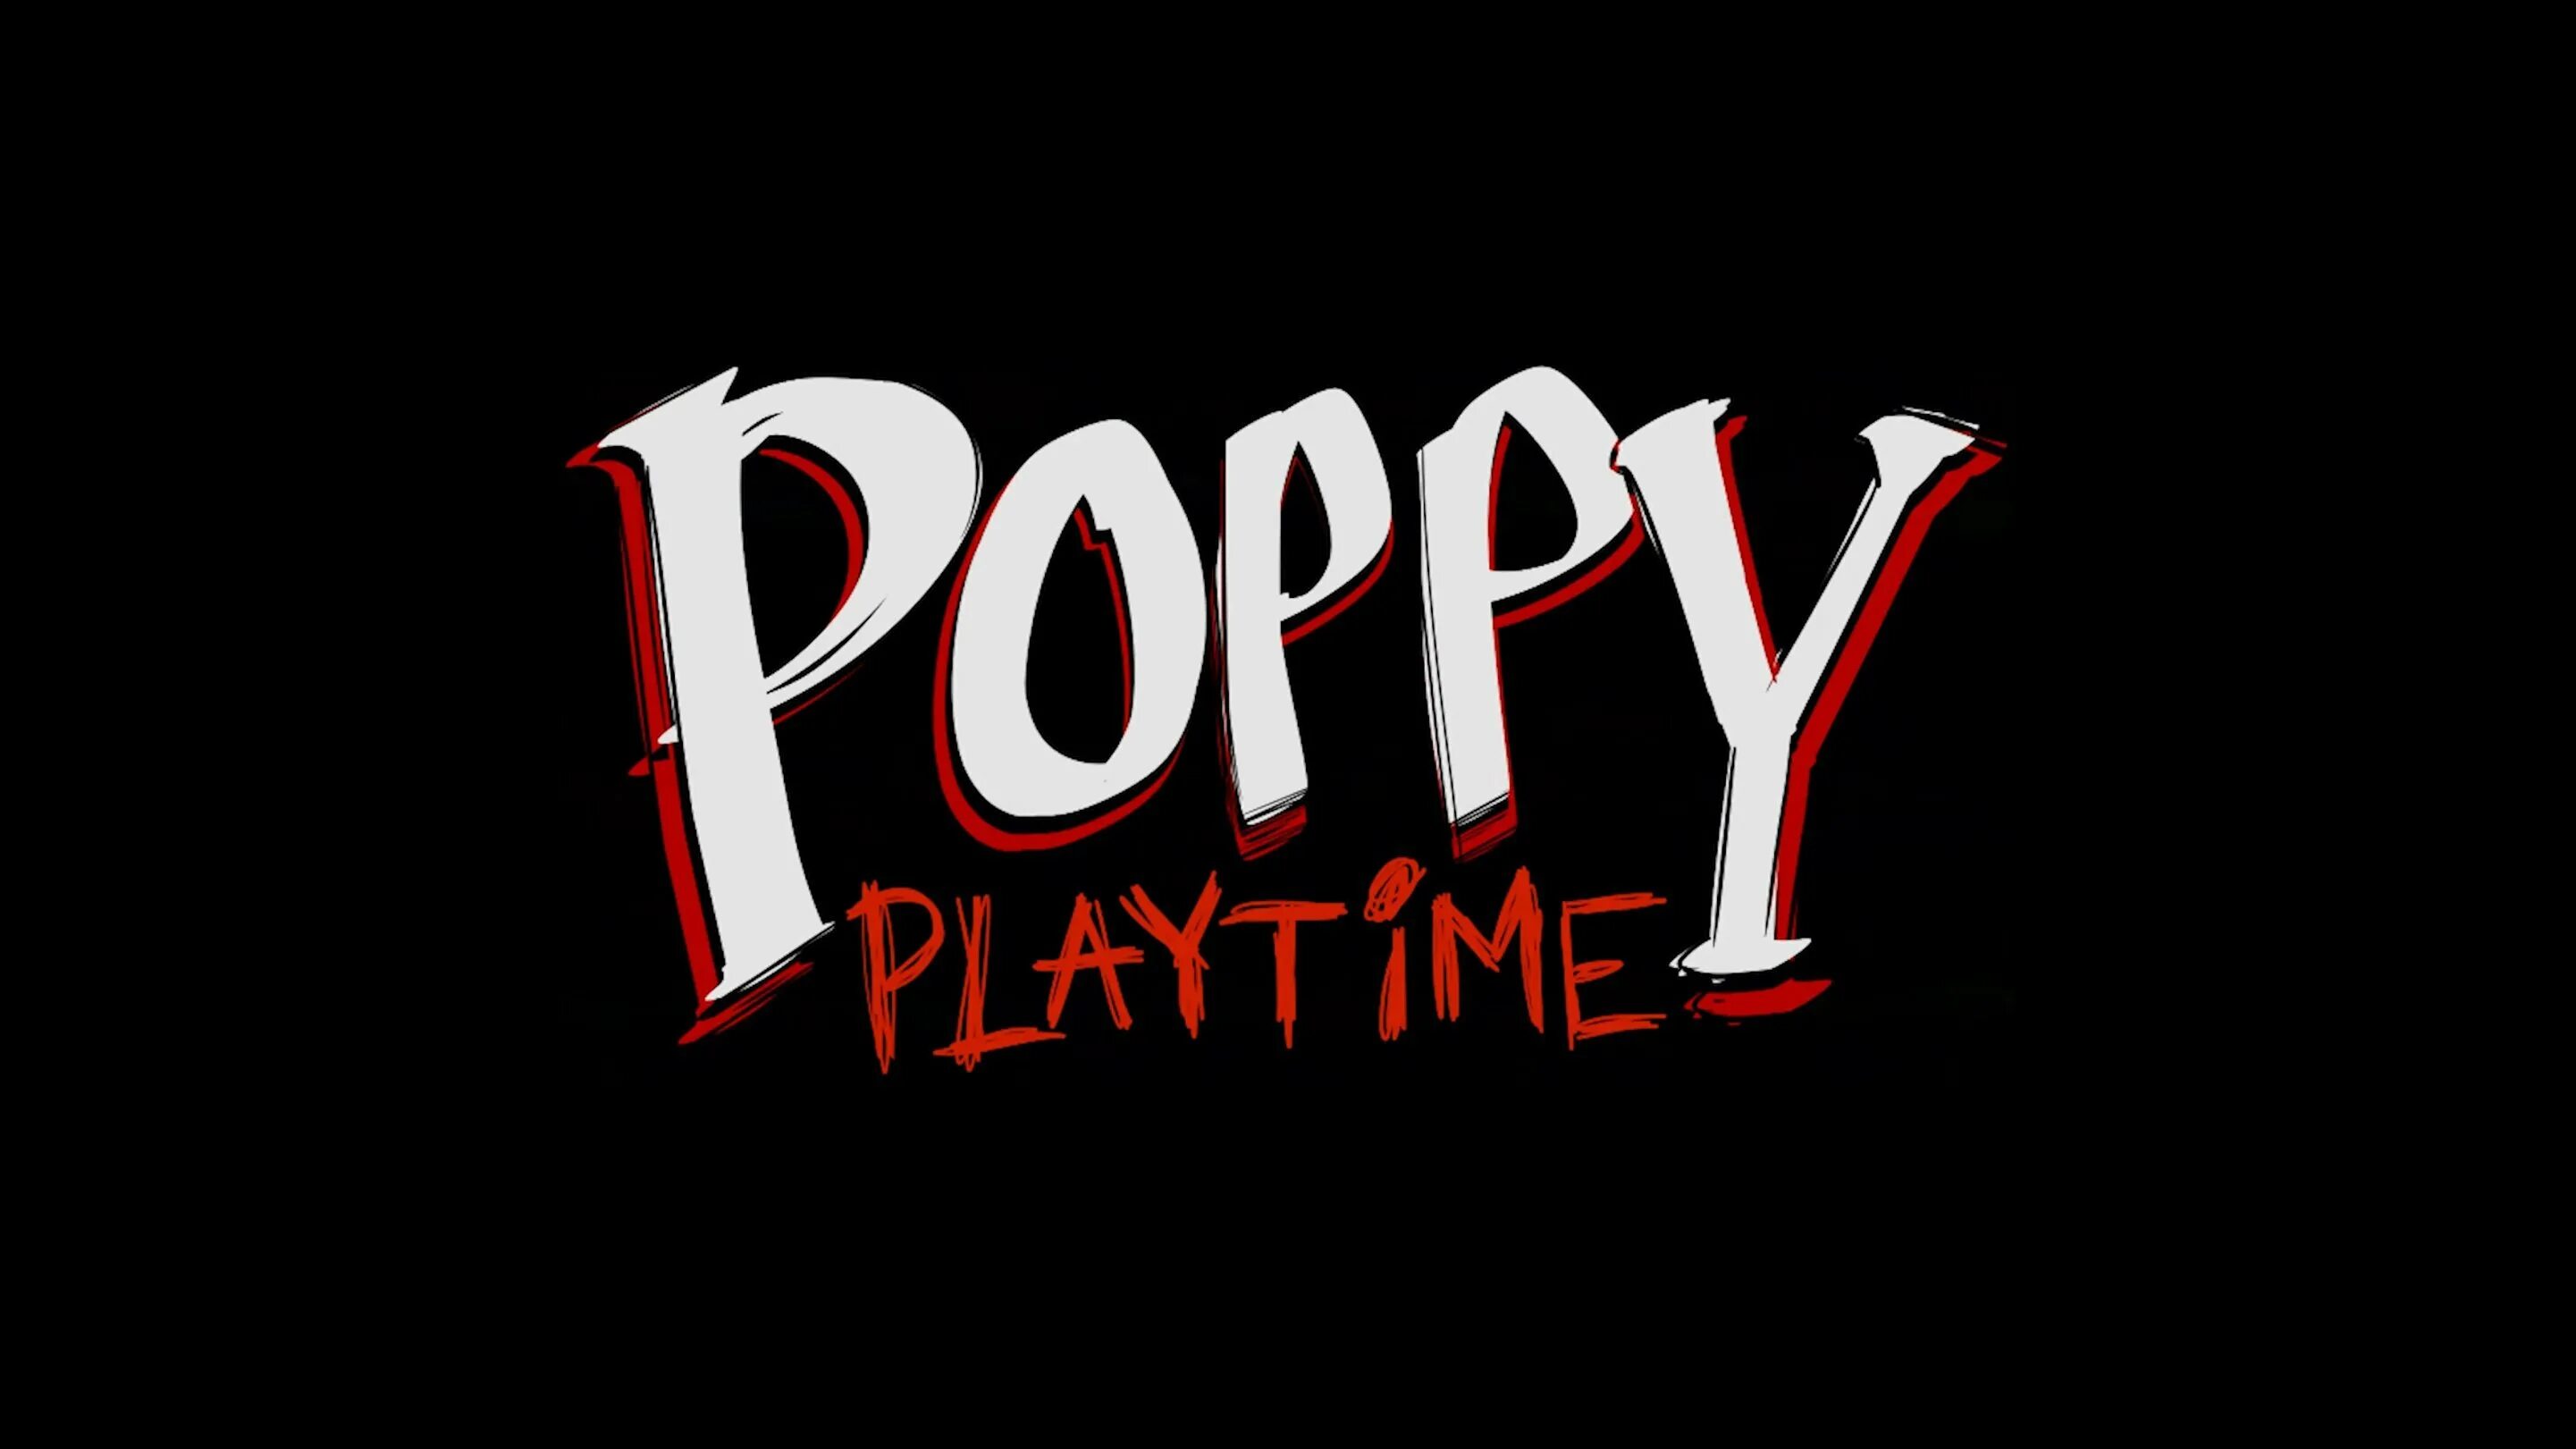 Poppy Playtime. Poppy Playtime надпись. Poppy Playtime 2 надпись. Poppy Playtime 1. Poppy playtime 18 плюс